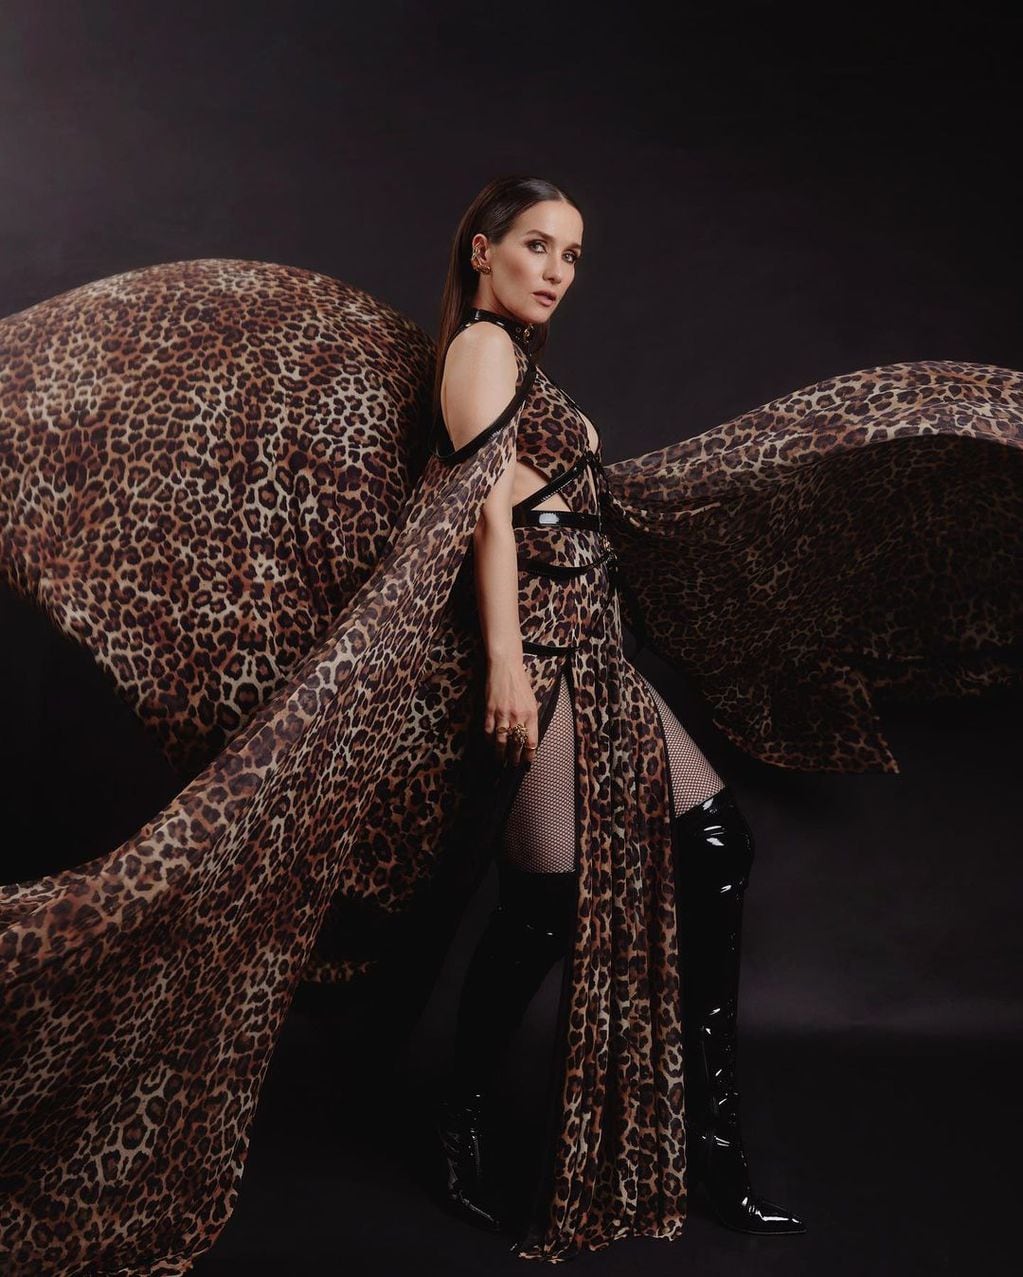 Leopardo y cuero: Natalia Oreiro cautivó a sus seguidores con un look muy rockero